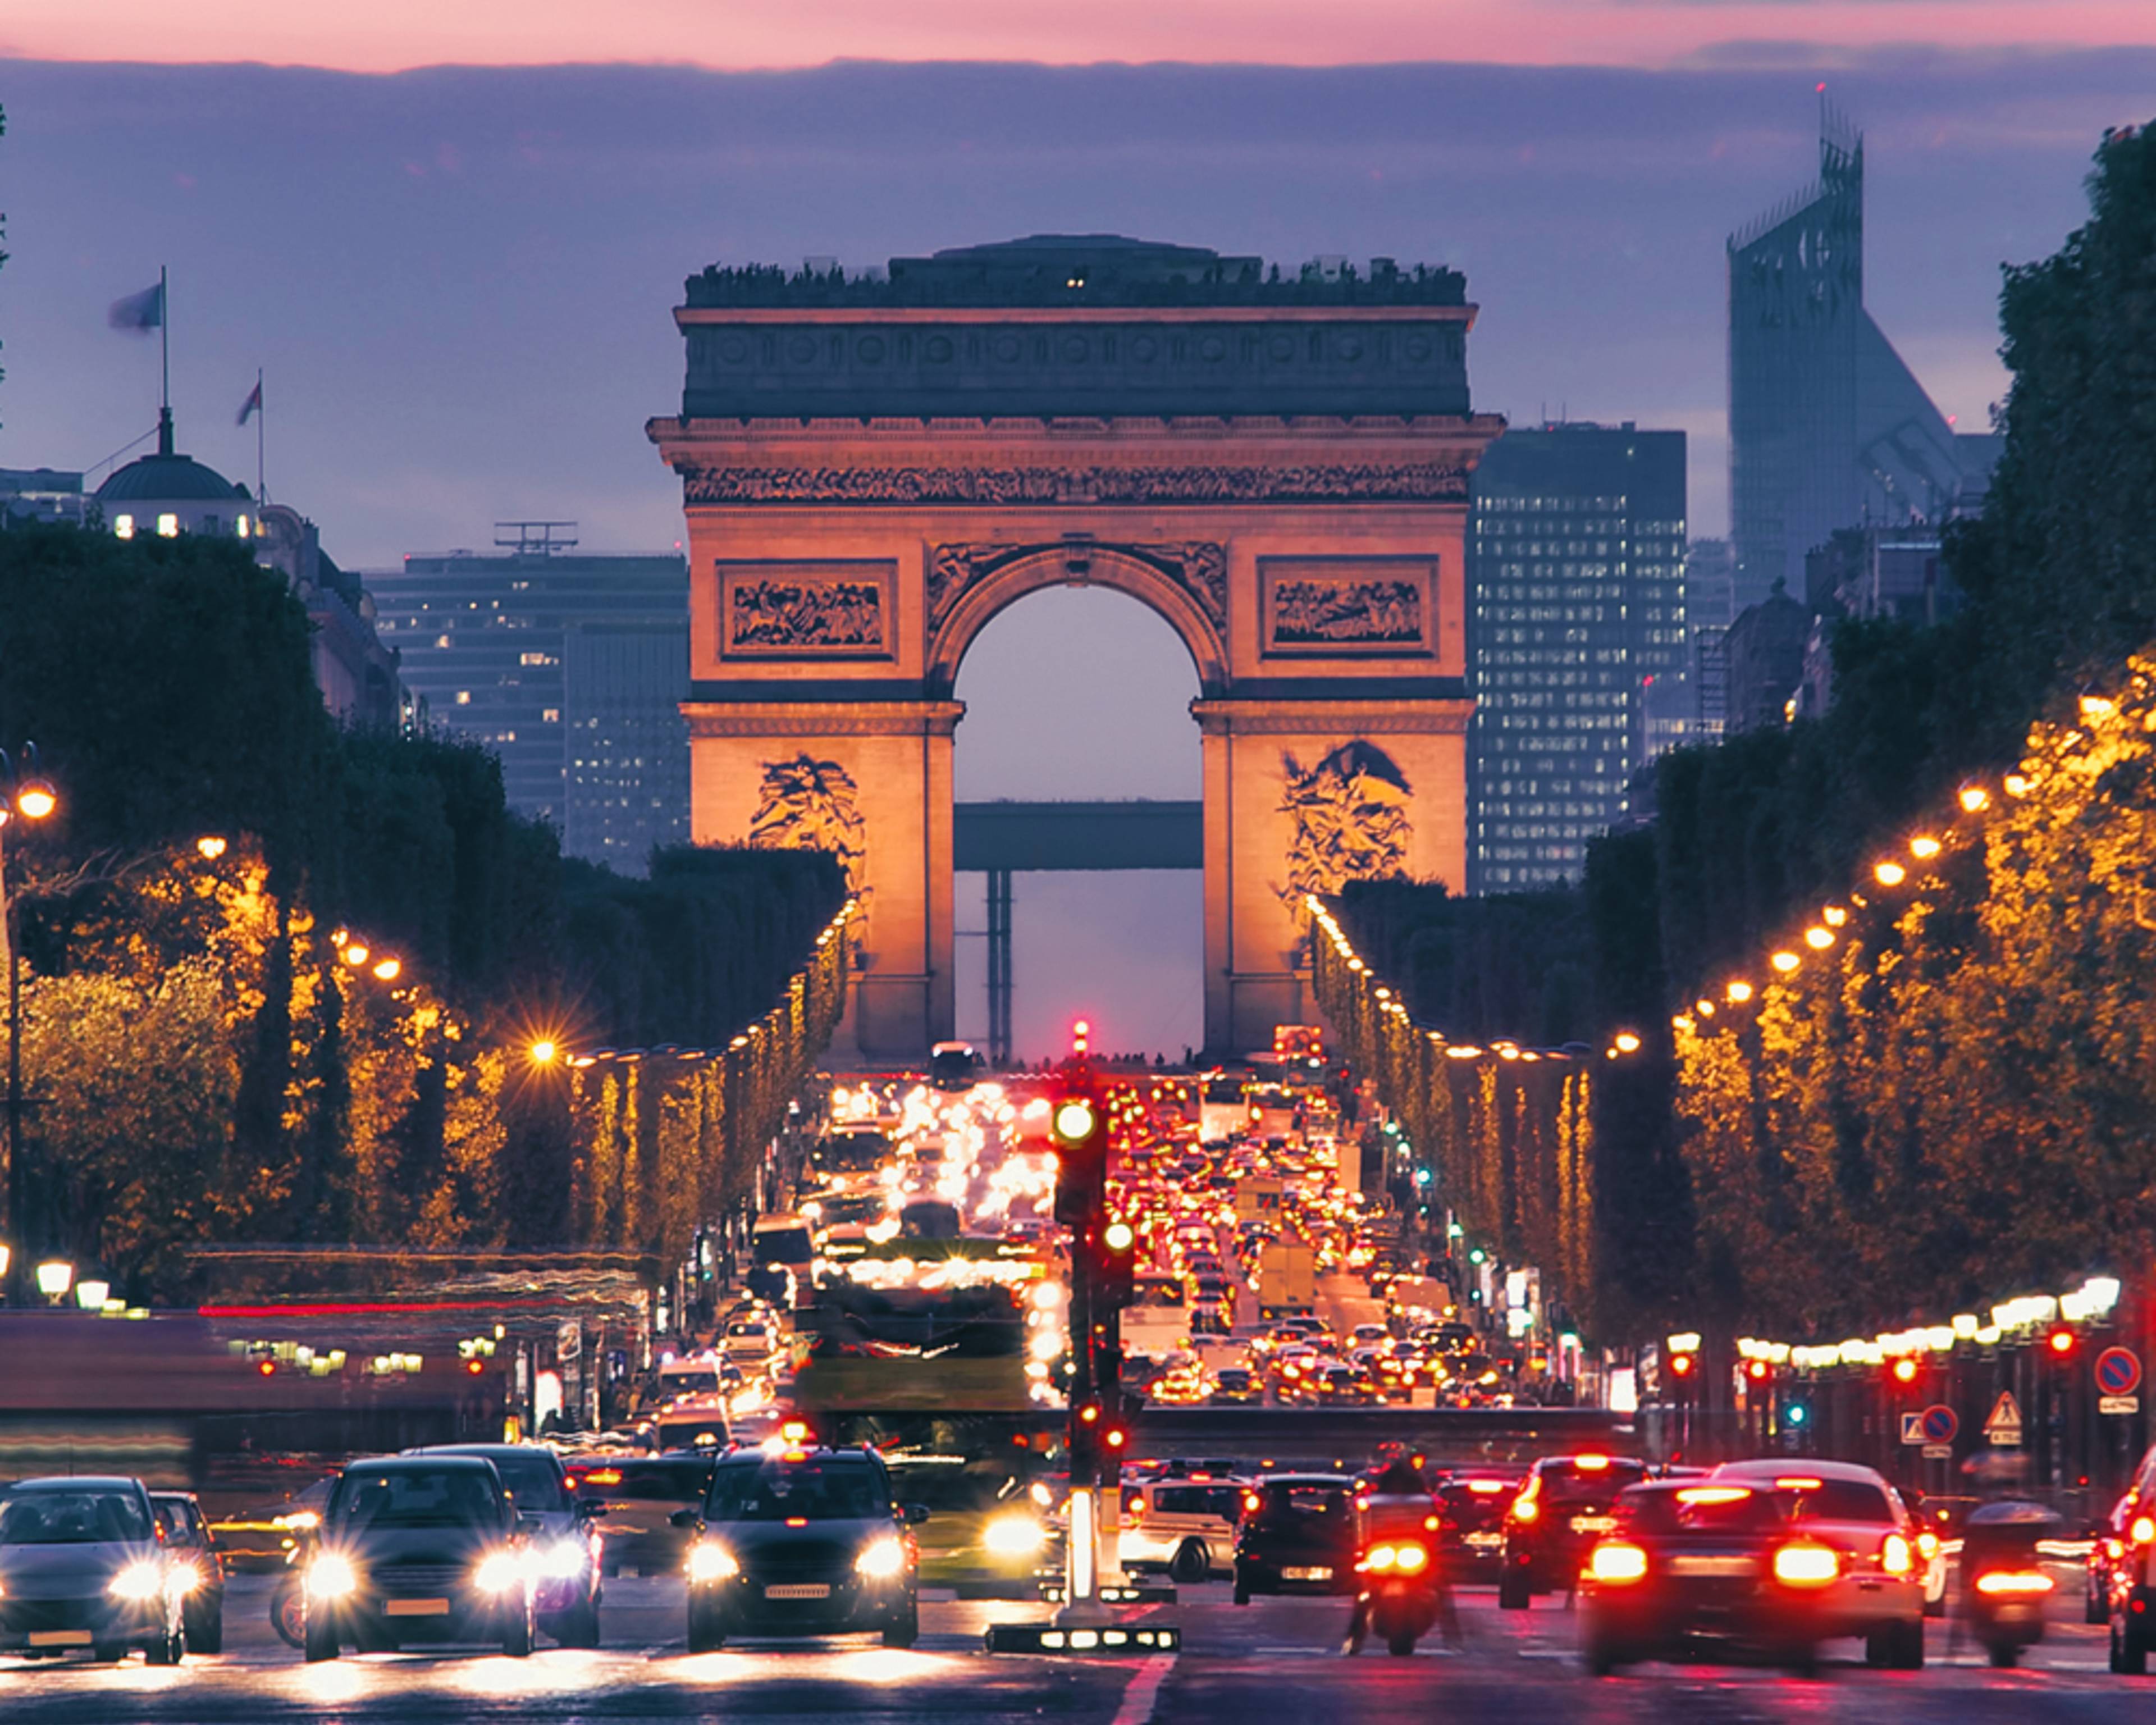 Städtereise Frankreich - Reise jetzt individuell gestalten